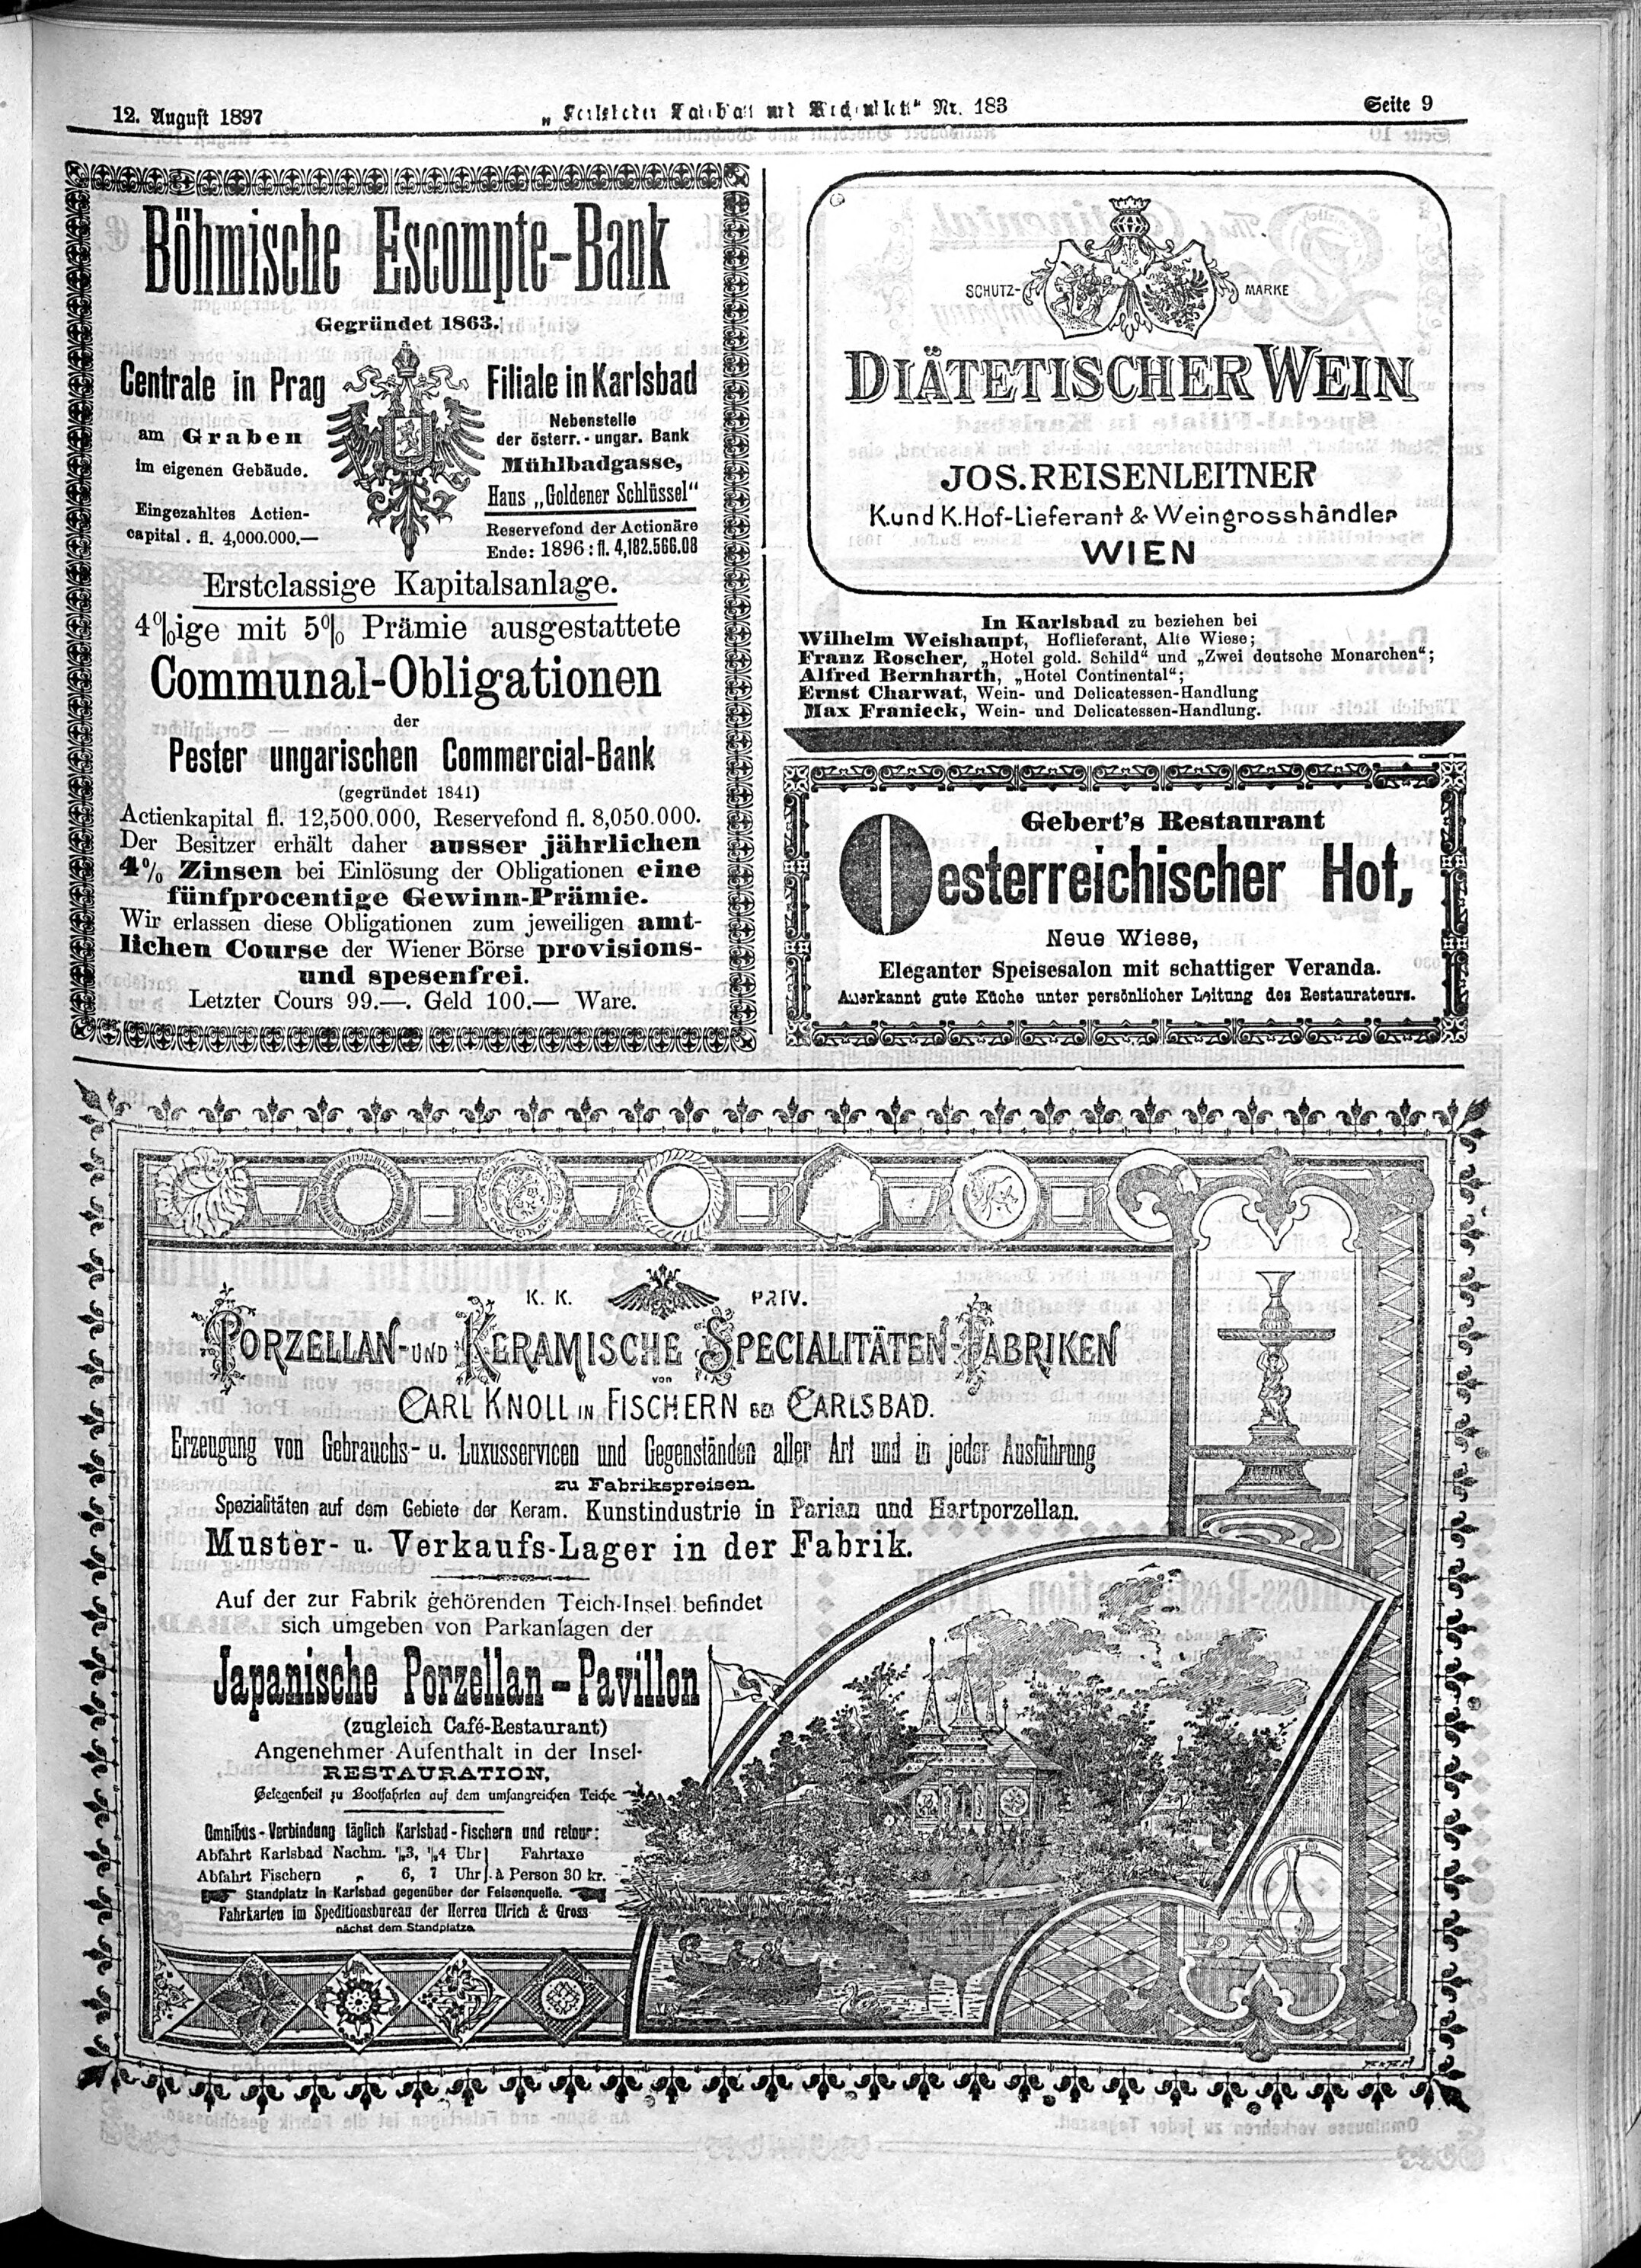 9. karlsbader-badeblatt-1897-08-12-n183_2135